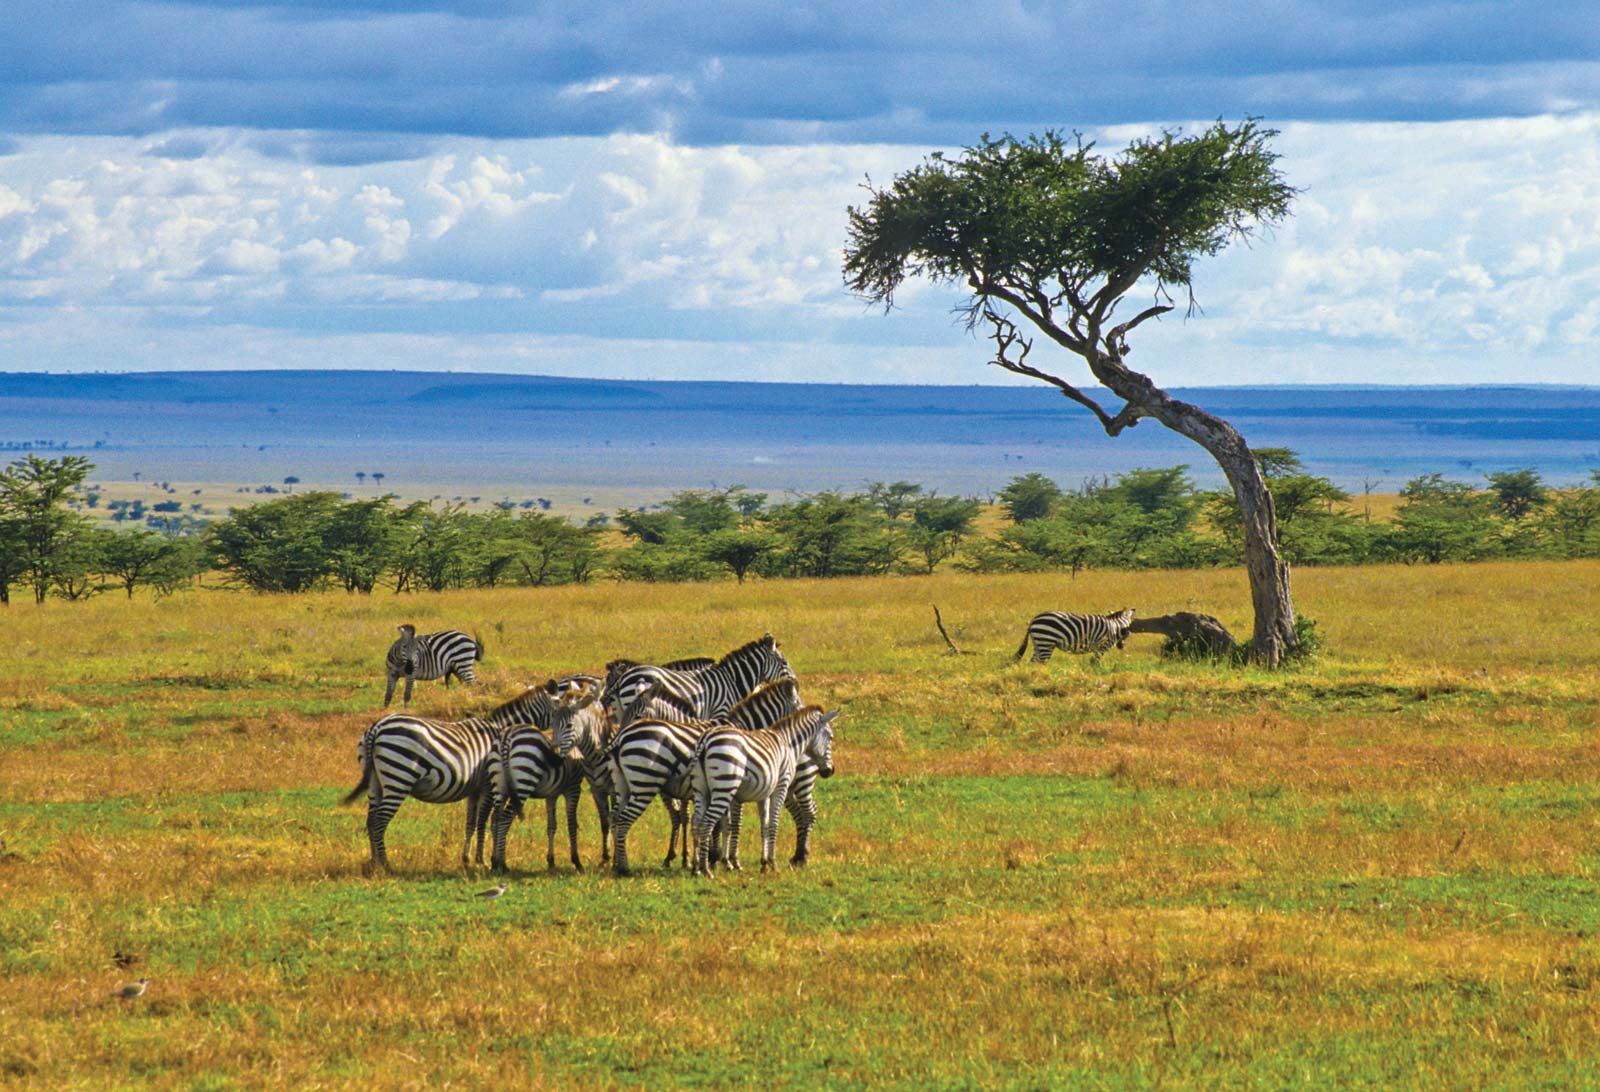 Herd-zebras-Kenya-Maasai-Mara-National-Reserve.jpg